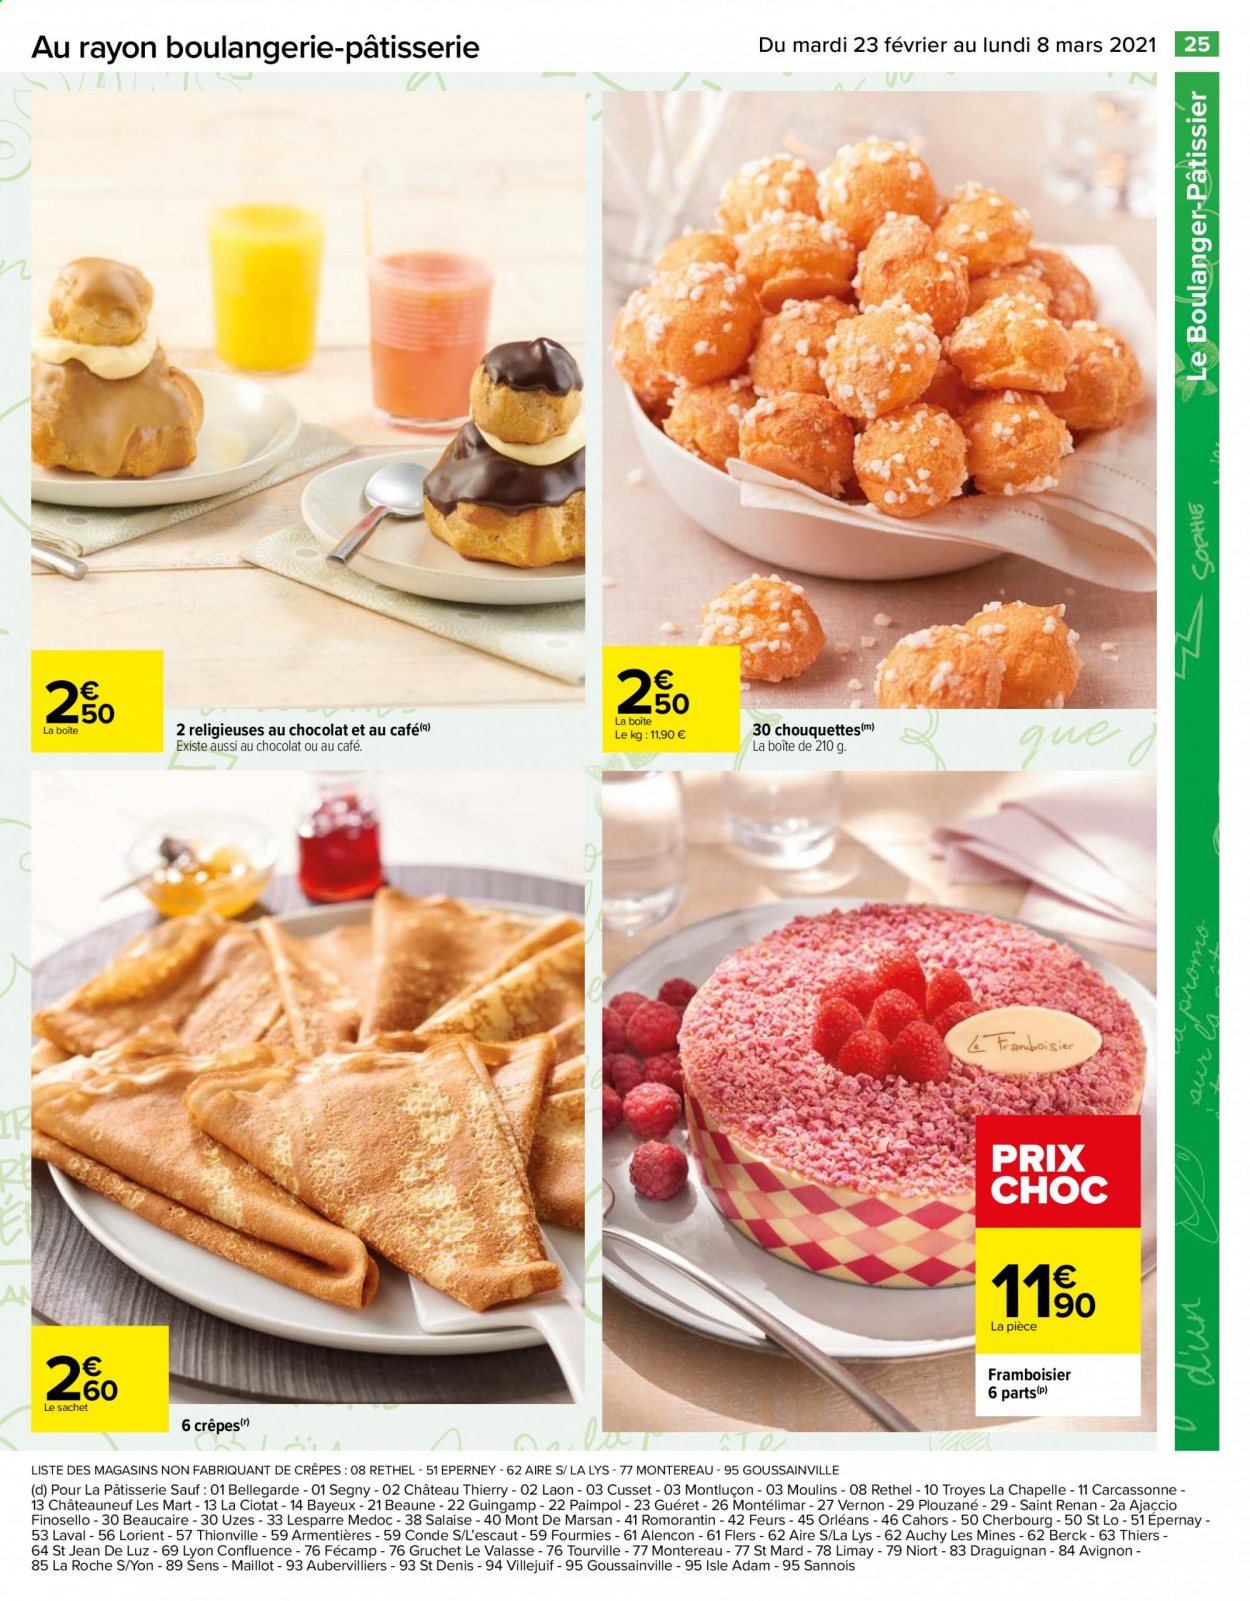 thumbnail - Catalogue Carrefour Hypermarchés - 23/02/2021 - 08/03/2021 - Produits soldés - crêpes, framboisier. Page 25.